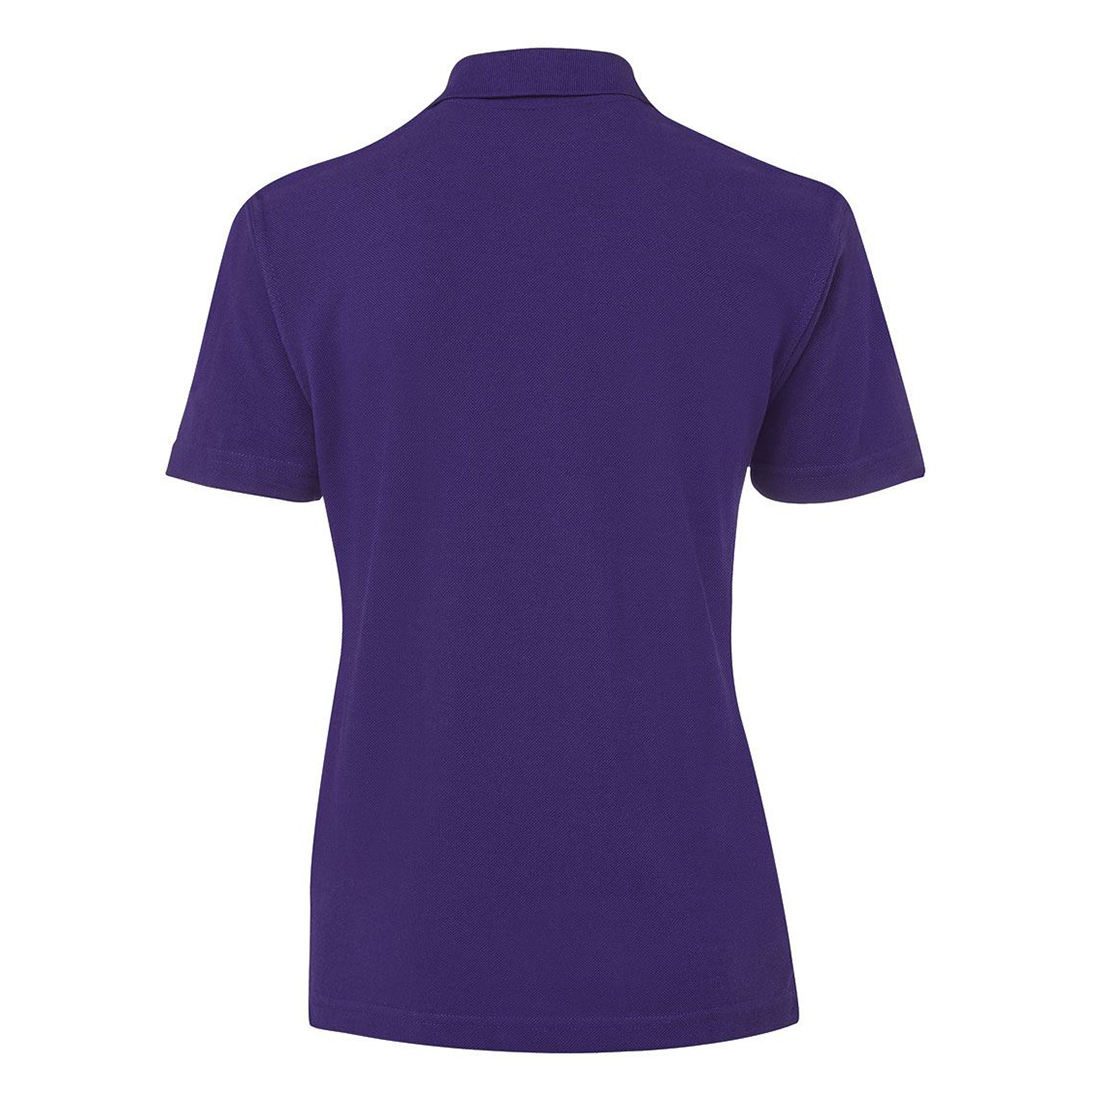 ladies purple polo shirt